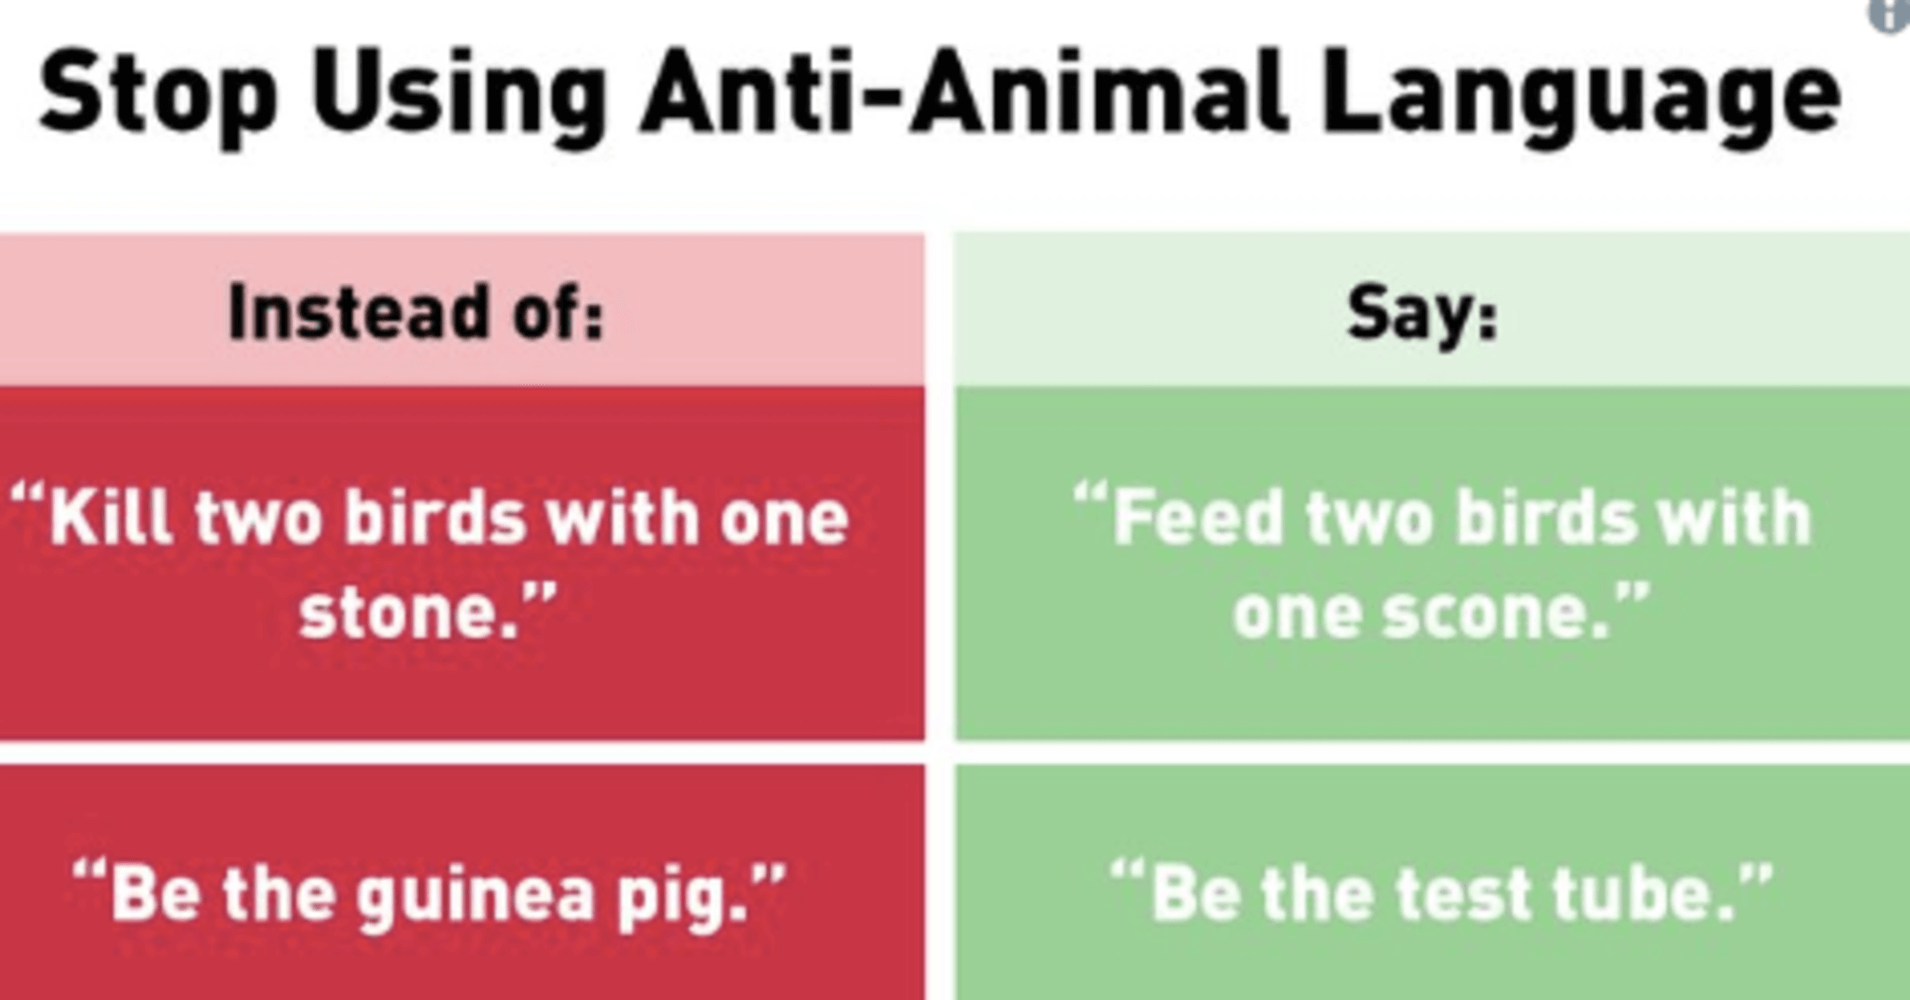 PETA Gets Roasted on Twitter After Tweets on ‘Anti-Animal Language’